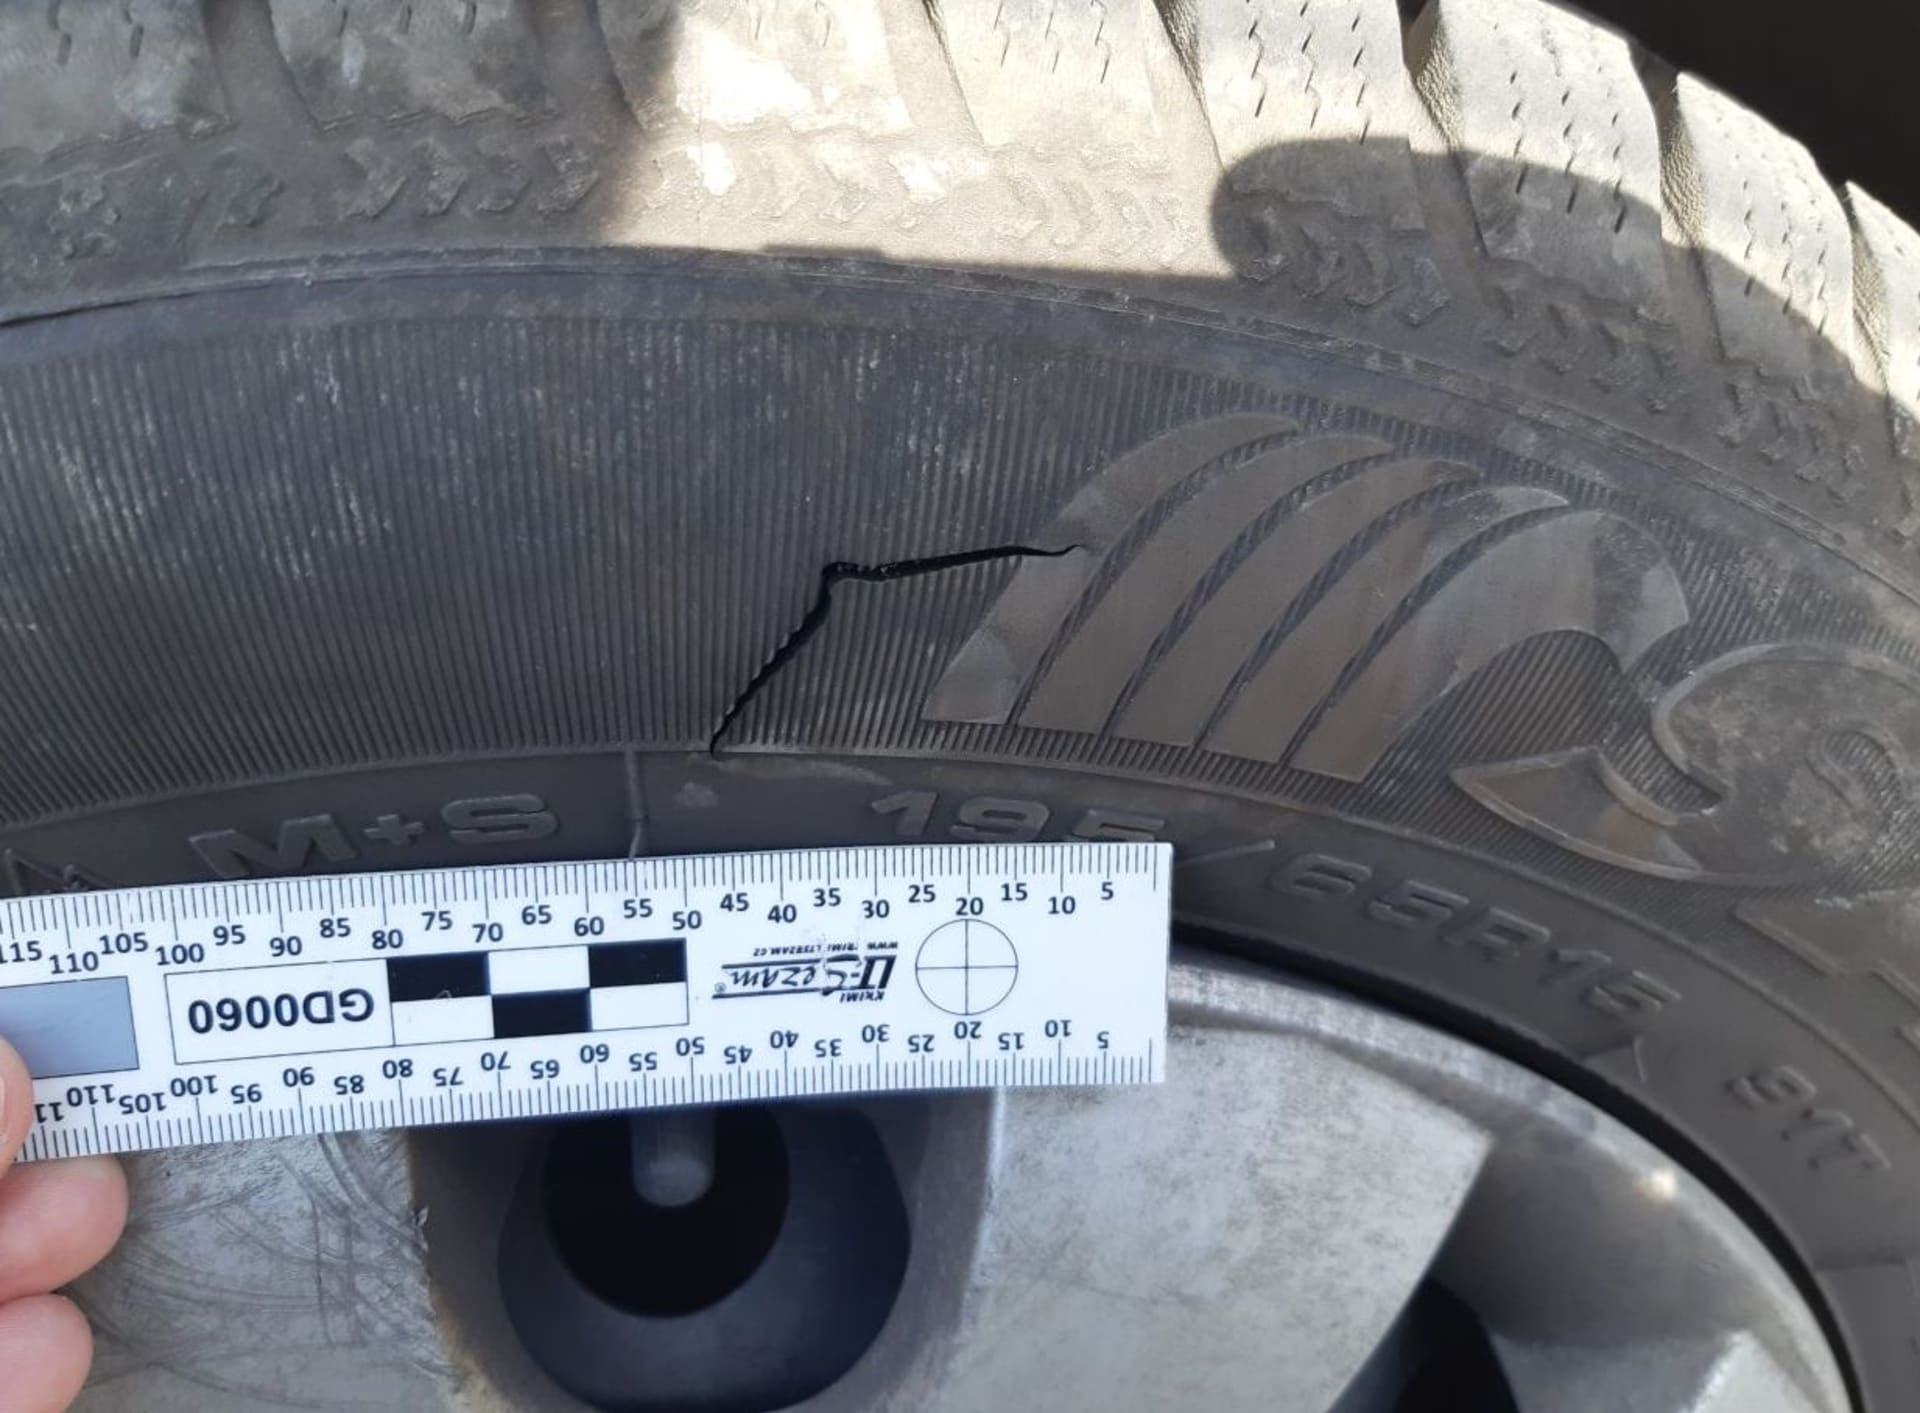 Muž se naštval na policisty a na služebním voze jim propíchl dvě pneumatiky.